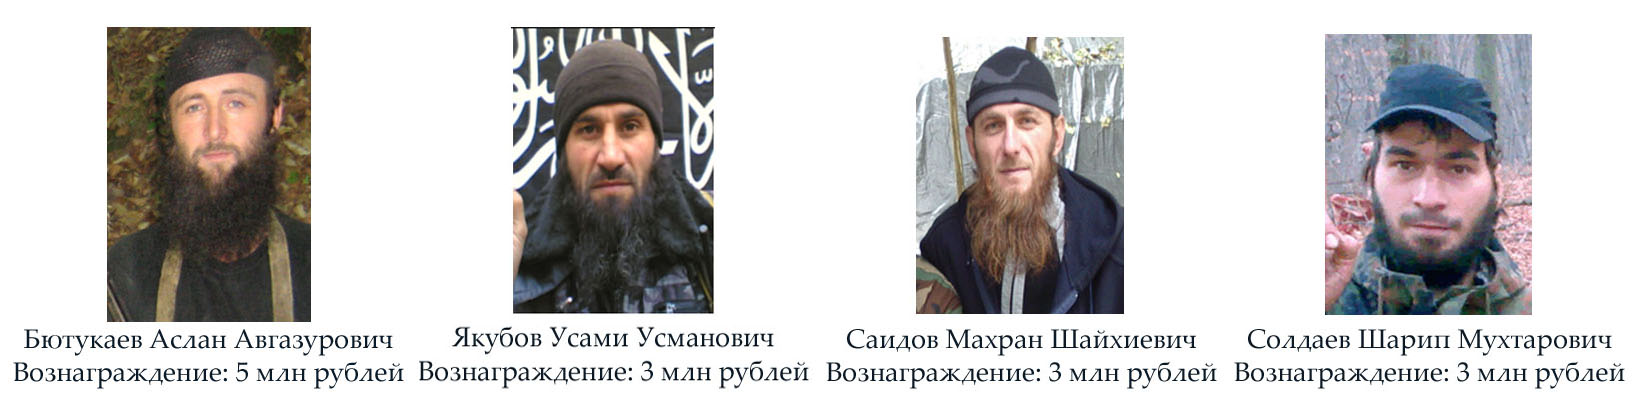 В Чечне ищут Бютукаева, Якубова, Саидова и Солдаева. Фото: сайт МВД по Чечне.